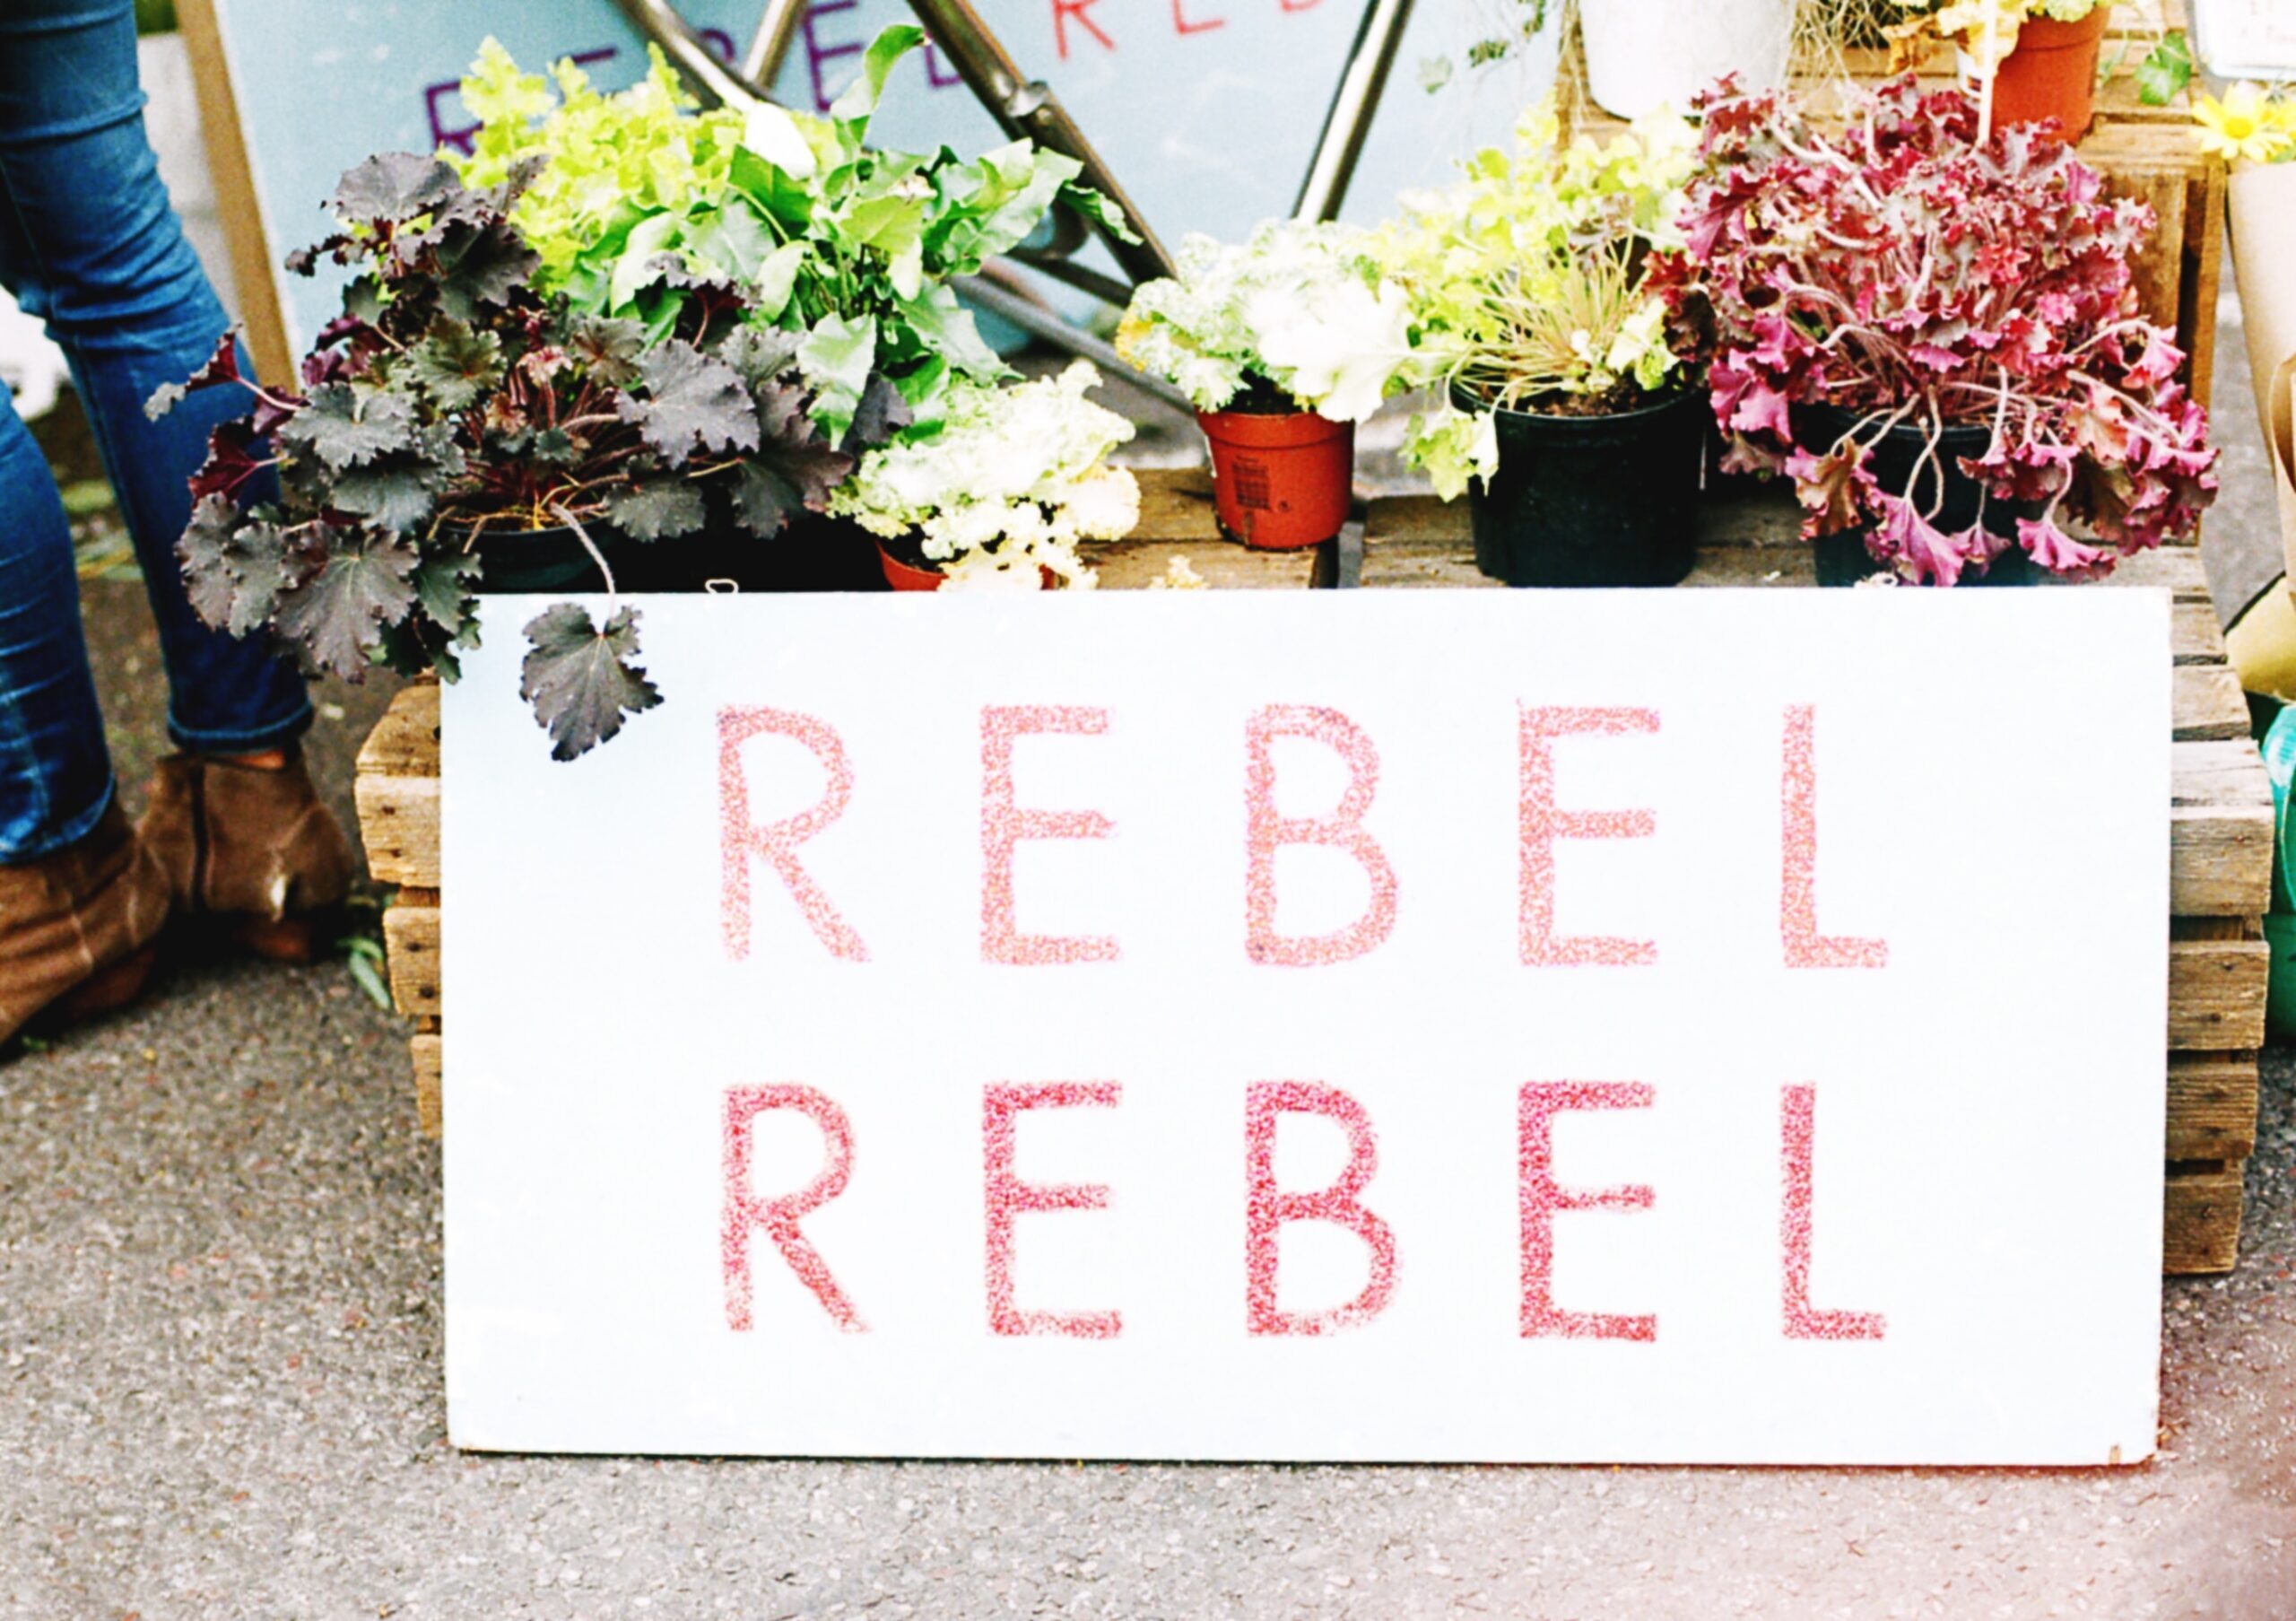 Be Your Own Rebel @ Rebel Heart Ceremonies 